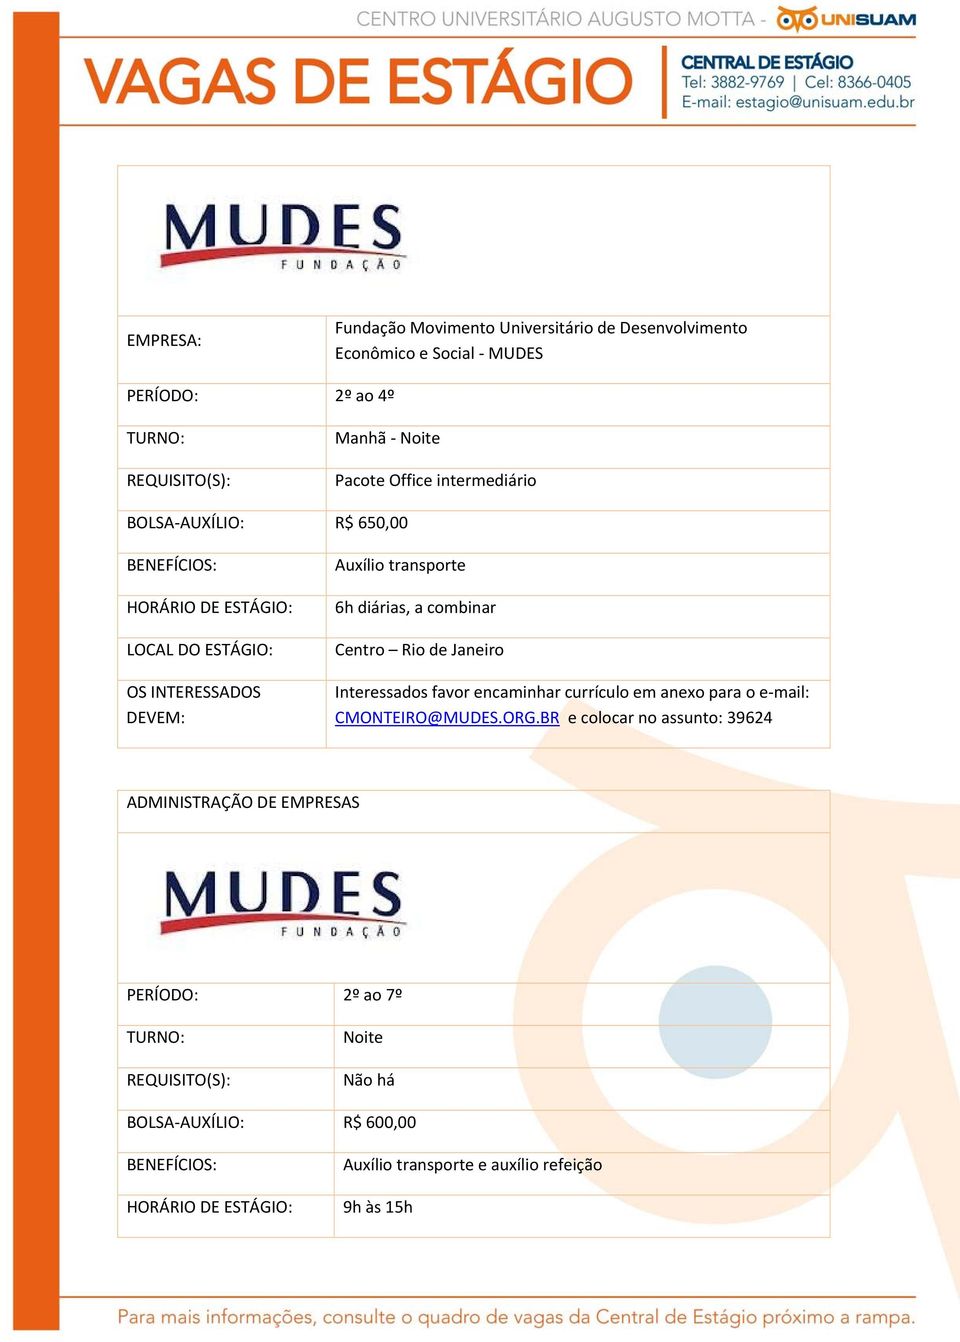 Interessados favor encaminhar currículo em anexo para o e mail: CMONTEIRO@MUDES.ORG.